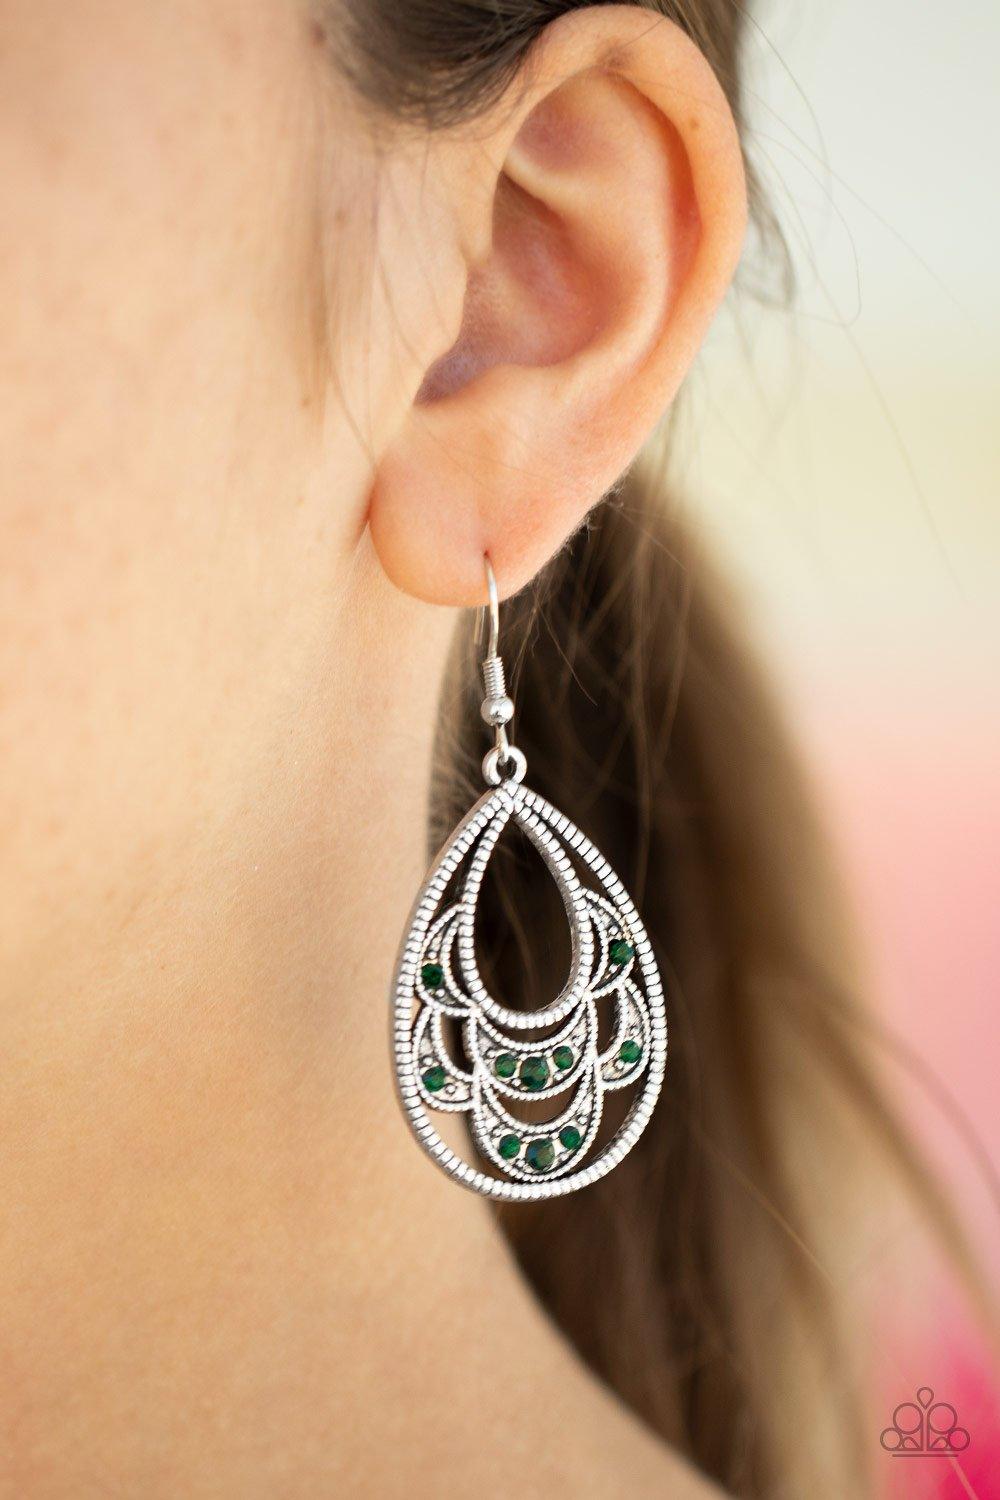 Malibu Macrame Green Earrings - Jewelry by Bretta